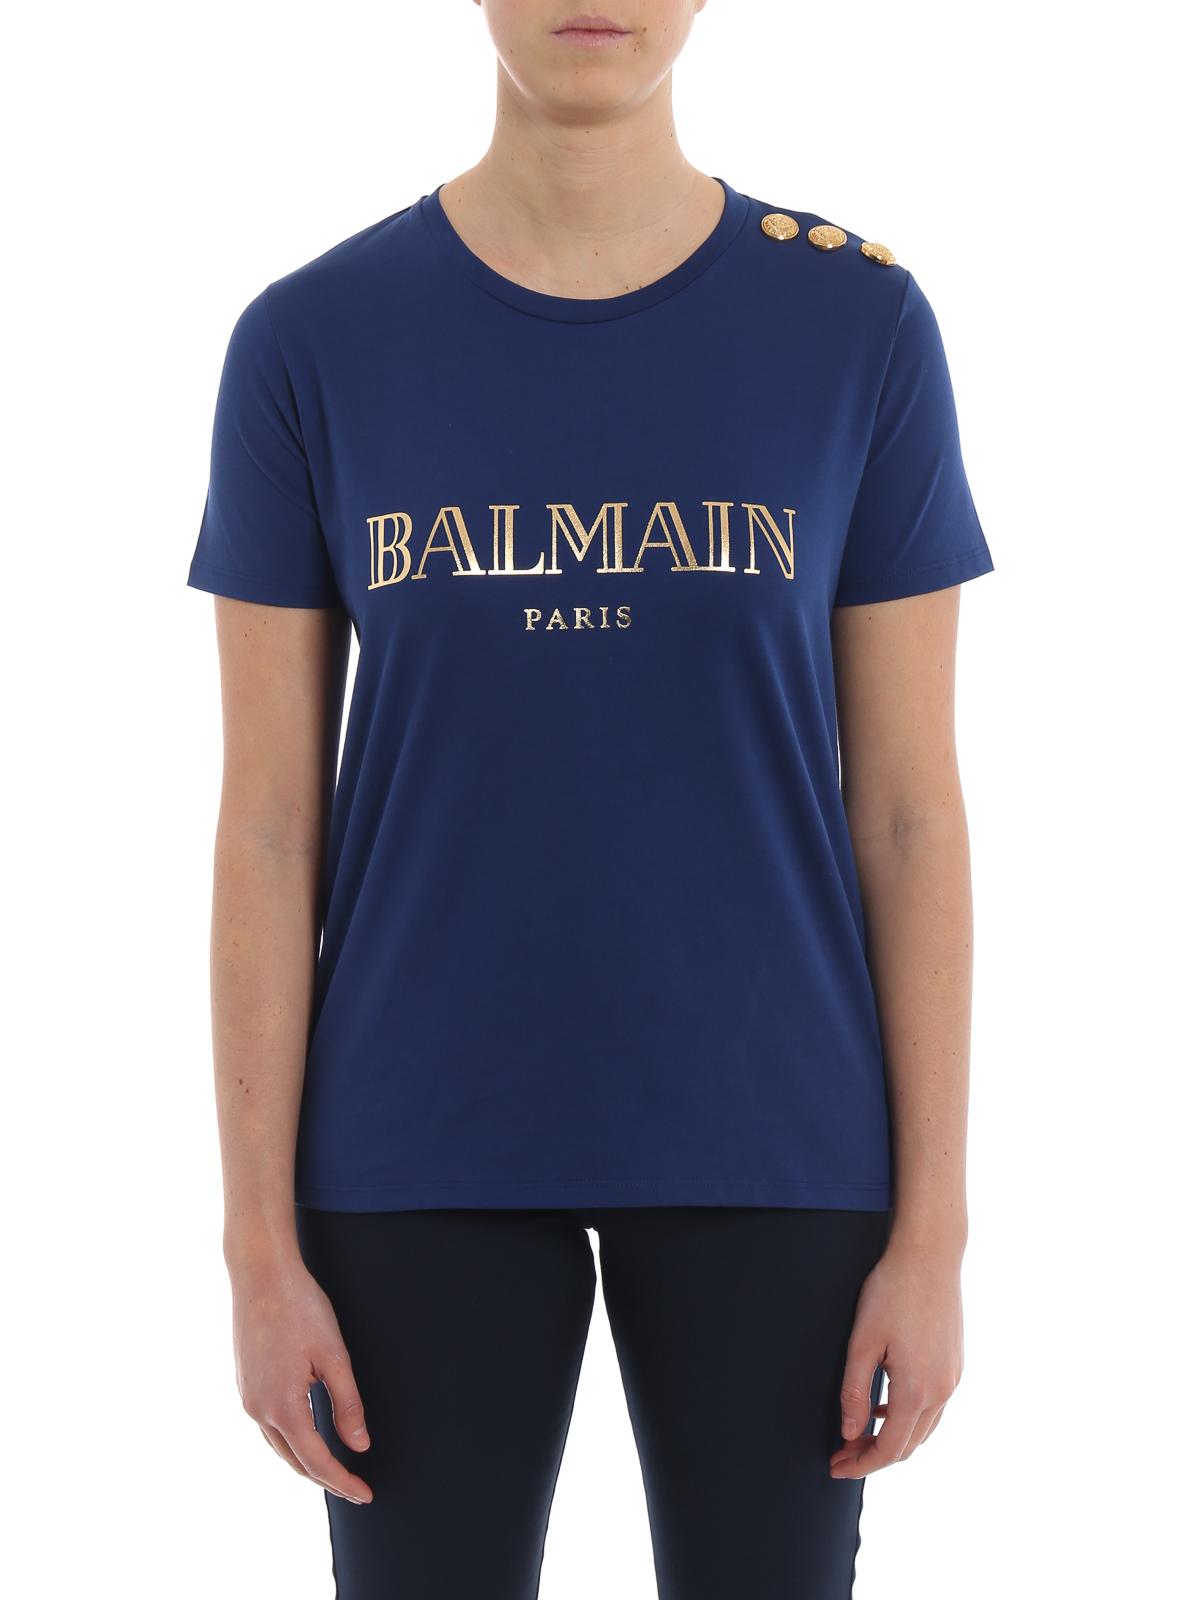 Balmain - Balmain blue cotton jersey - RF11077I042SAU